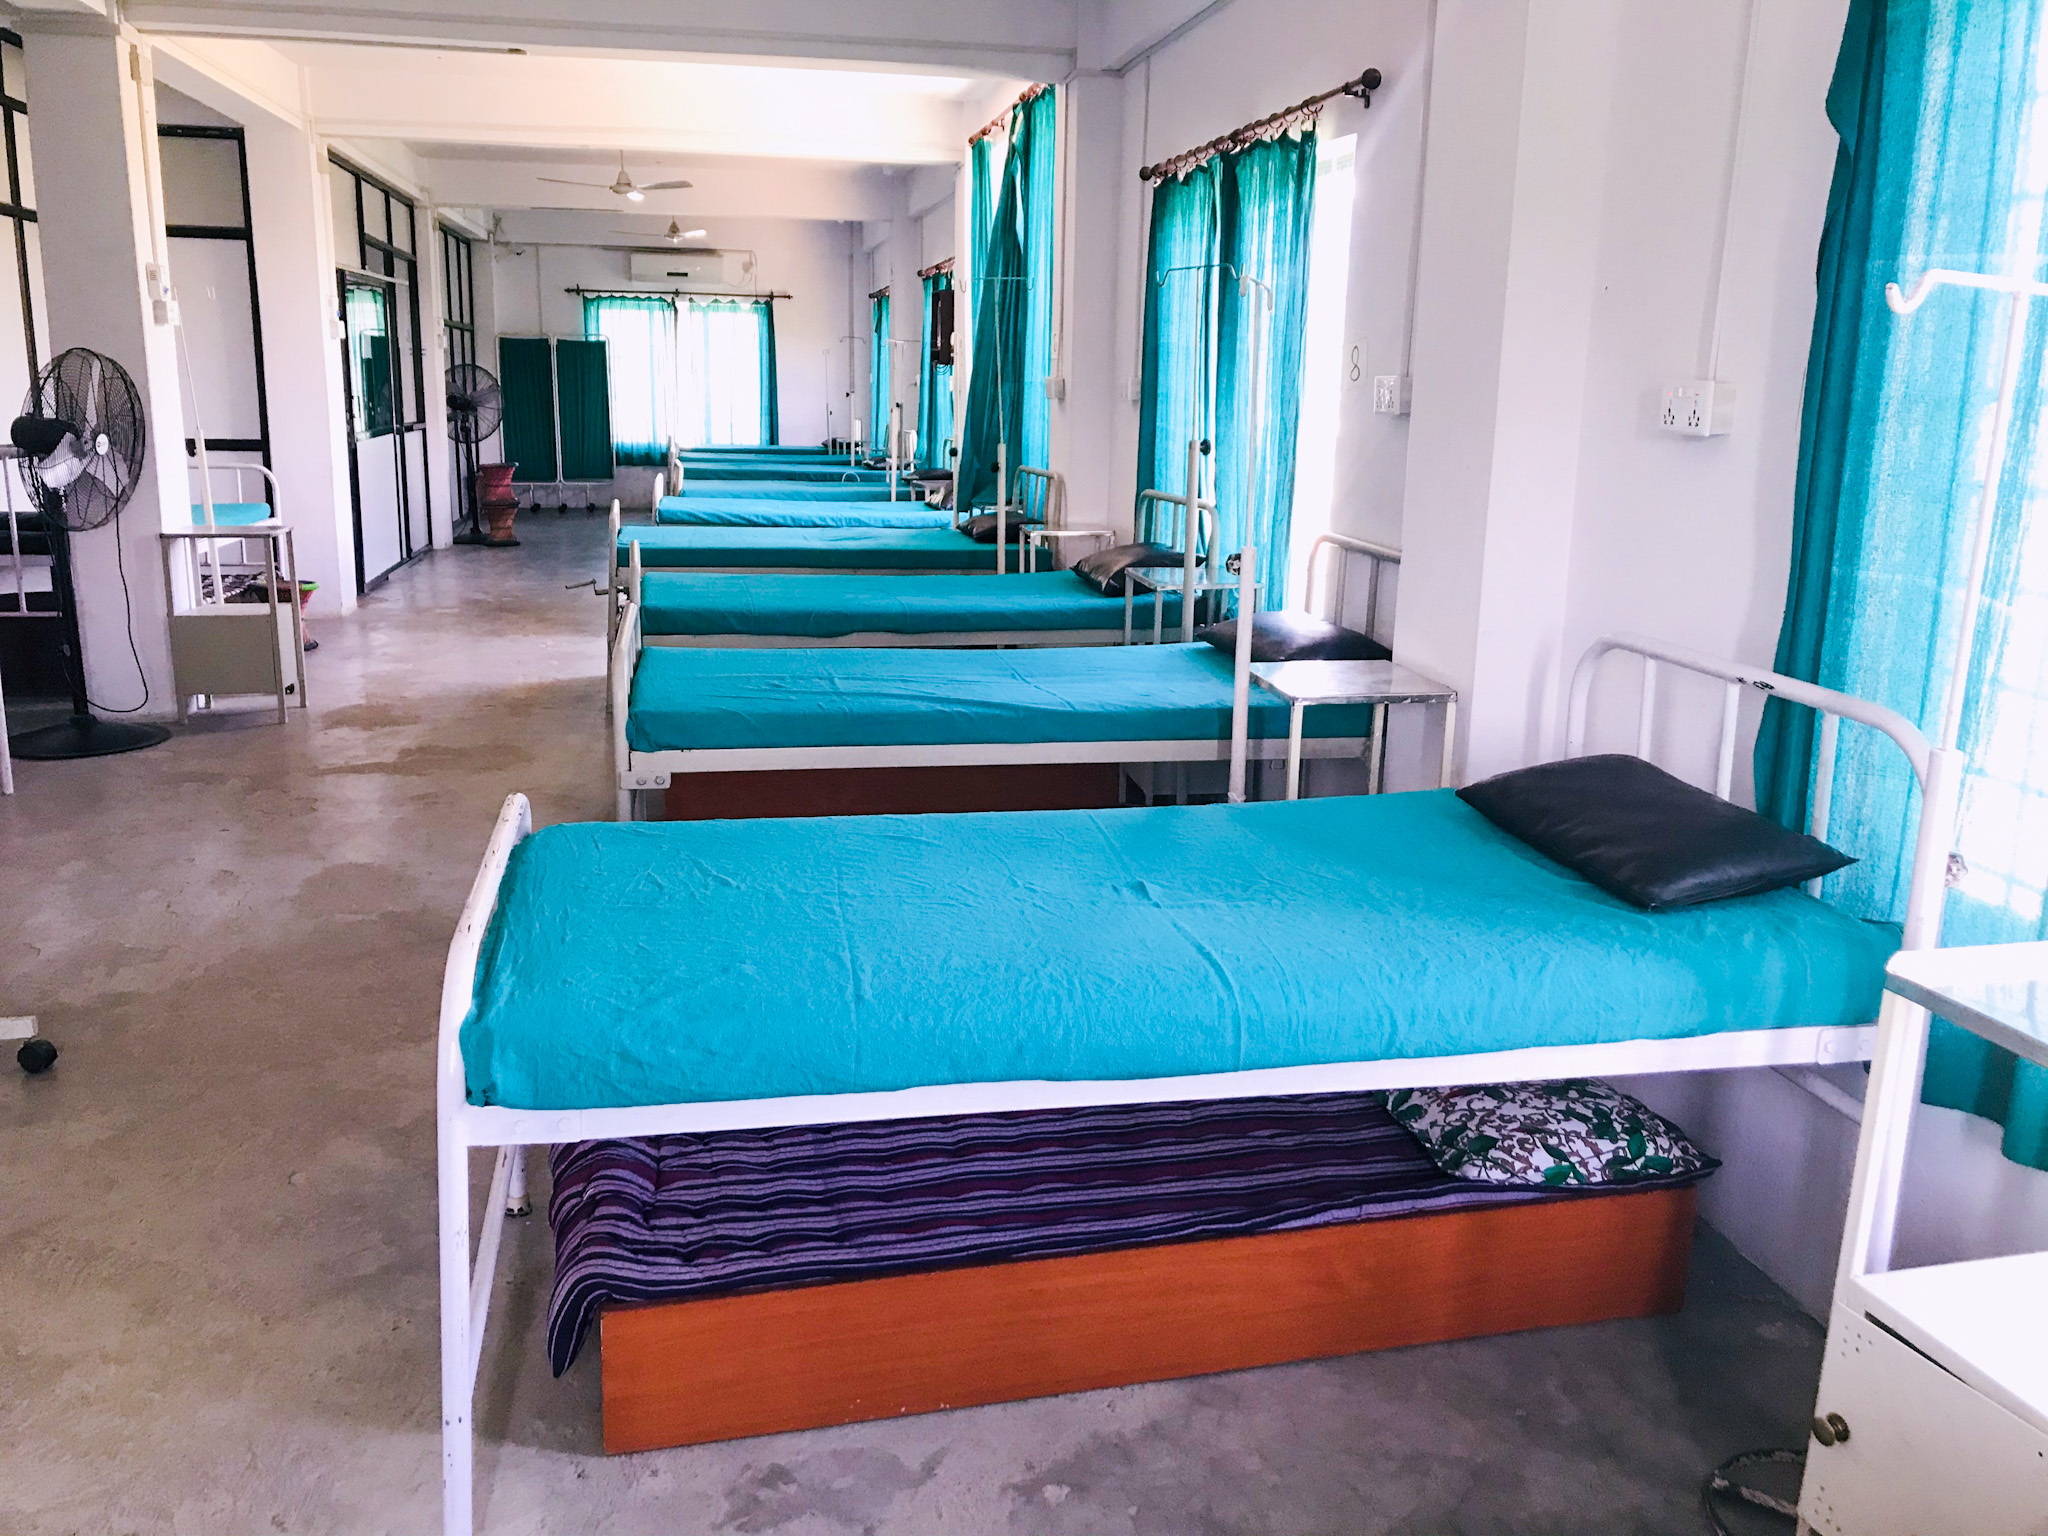 काठमाडौं उपत्यकाका सबै सरकारी अस्पताललाई कोभिड अस्पताल बनाउने सरकारको निर्णय